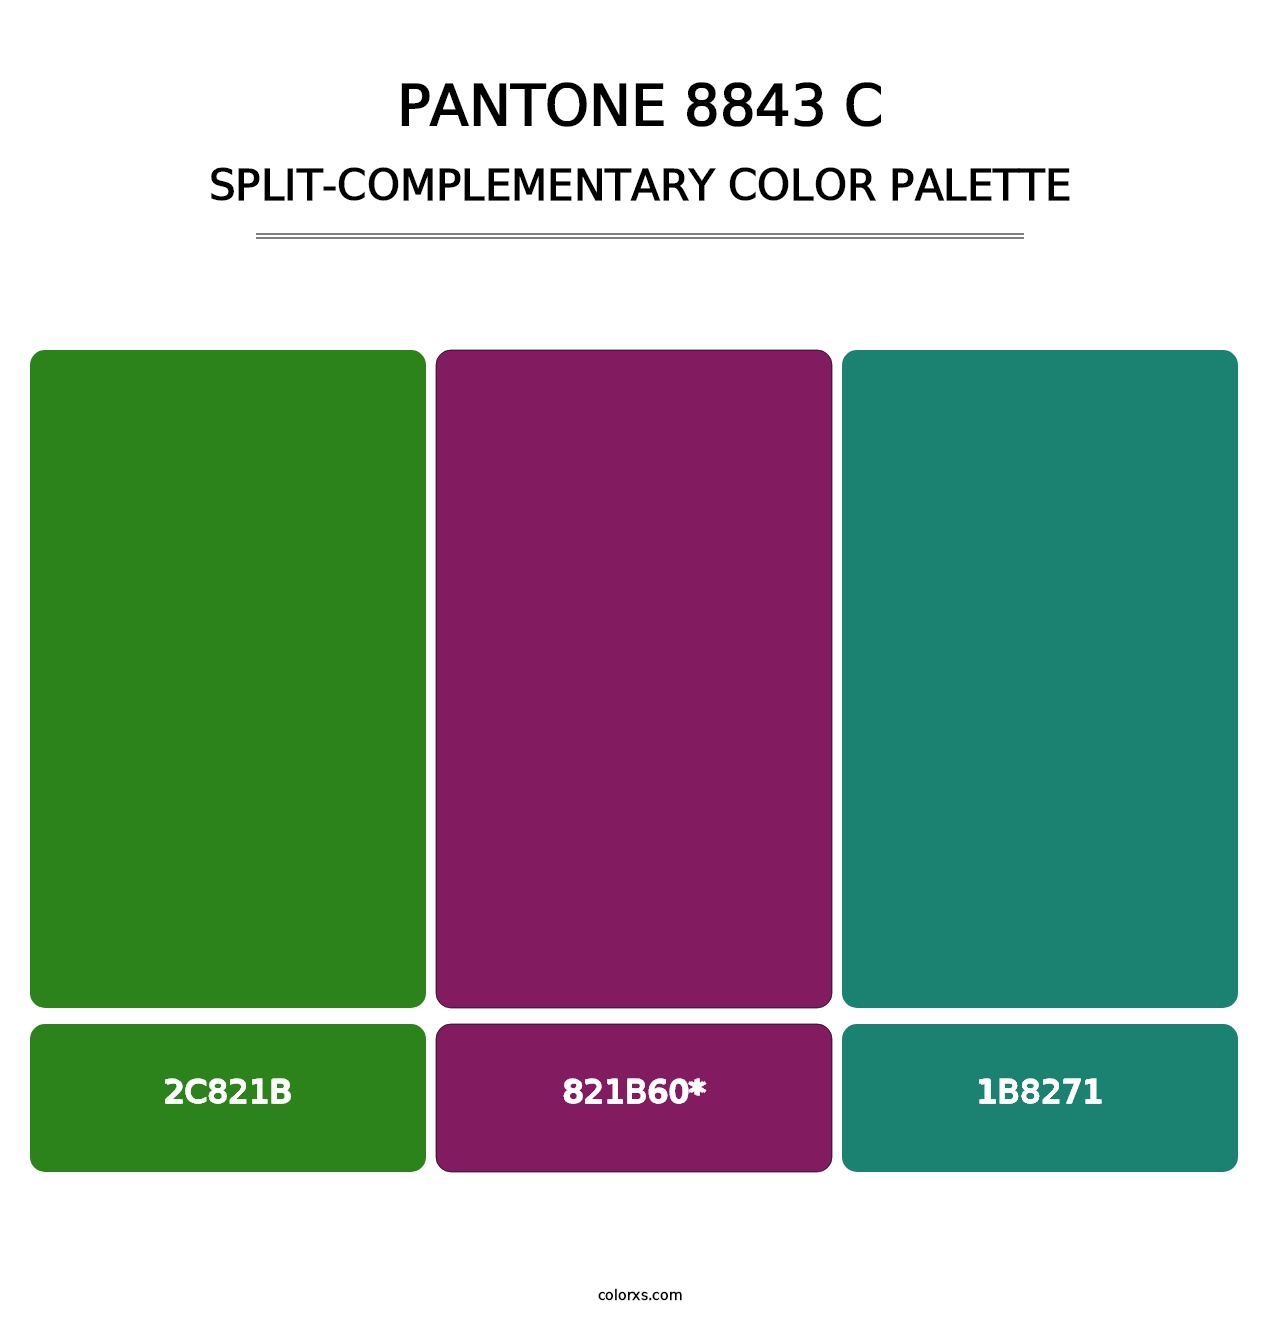 PANTONE 8843 C - Split-Complementary Color Palette